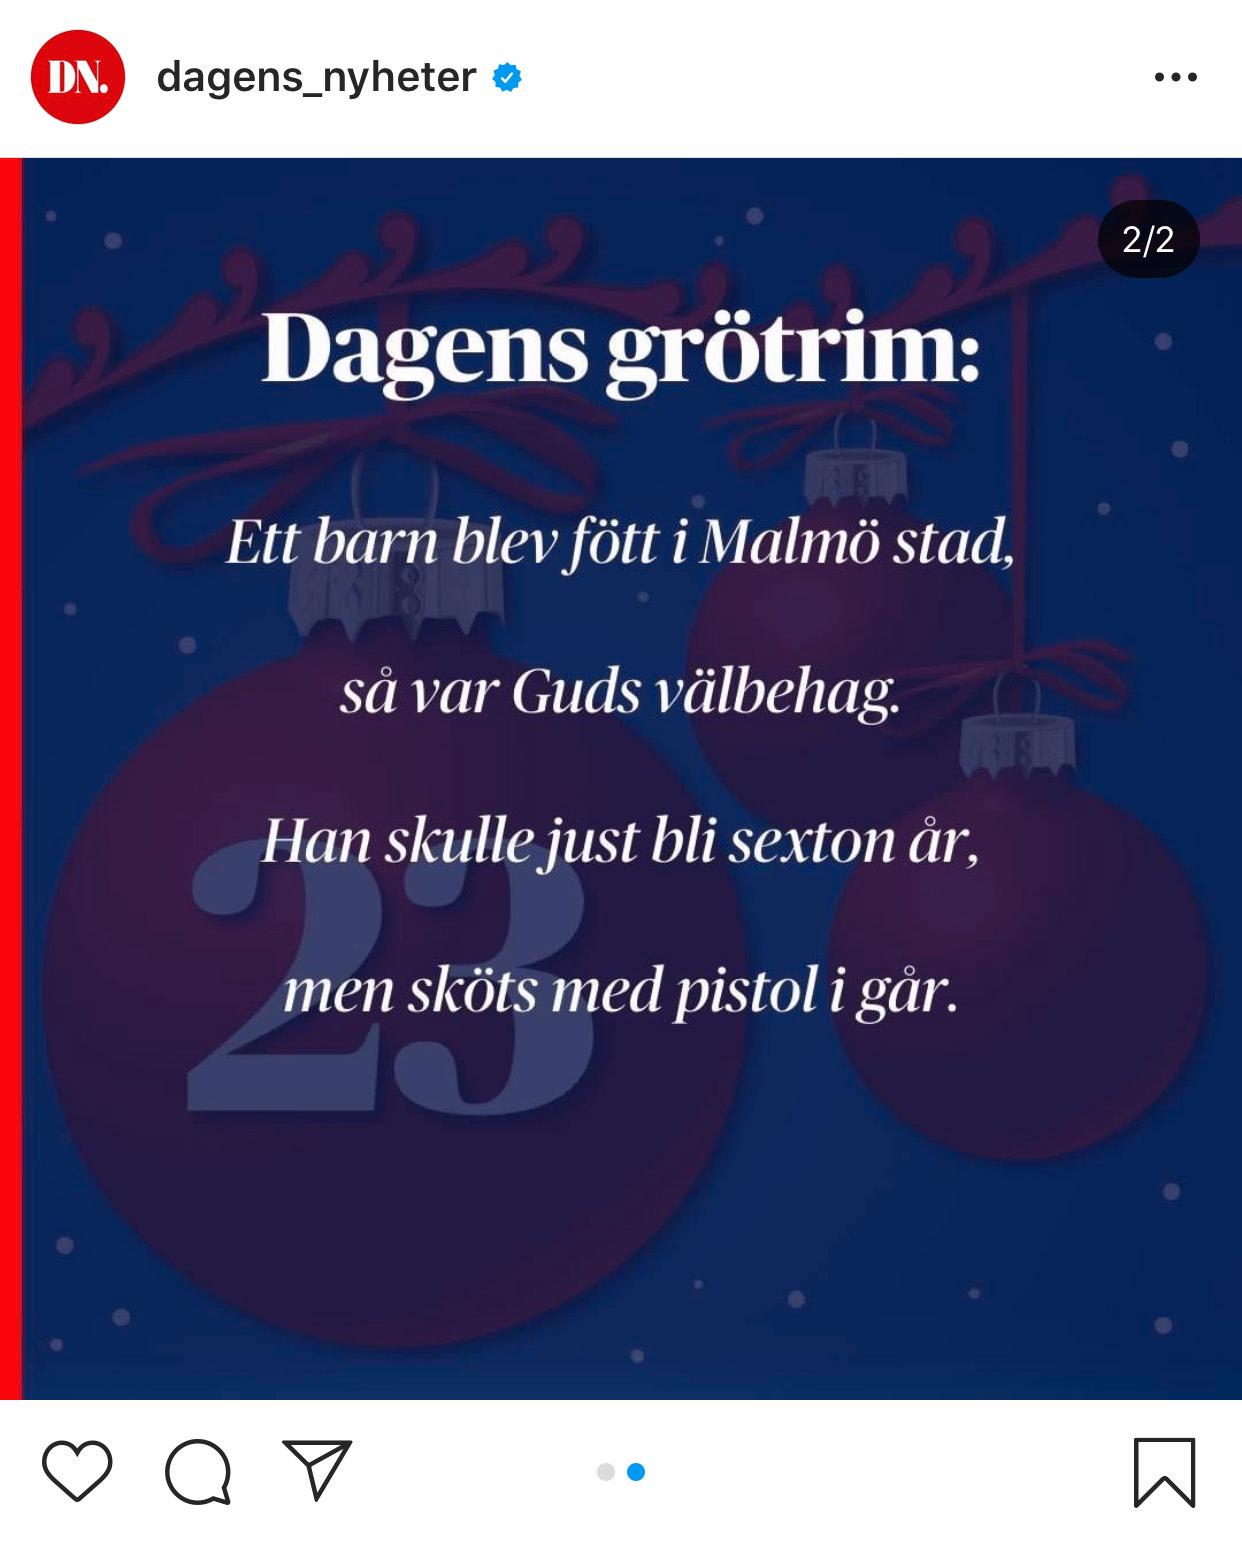 Dagens Nyheters grötrim från den 23 december fick stark kritik.